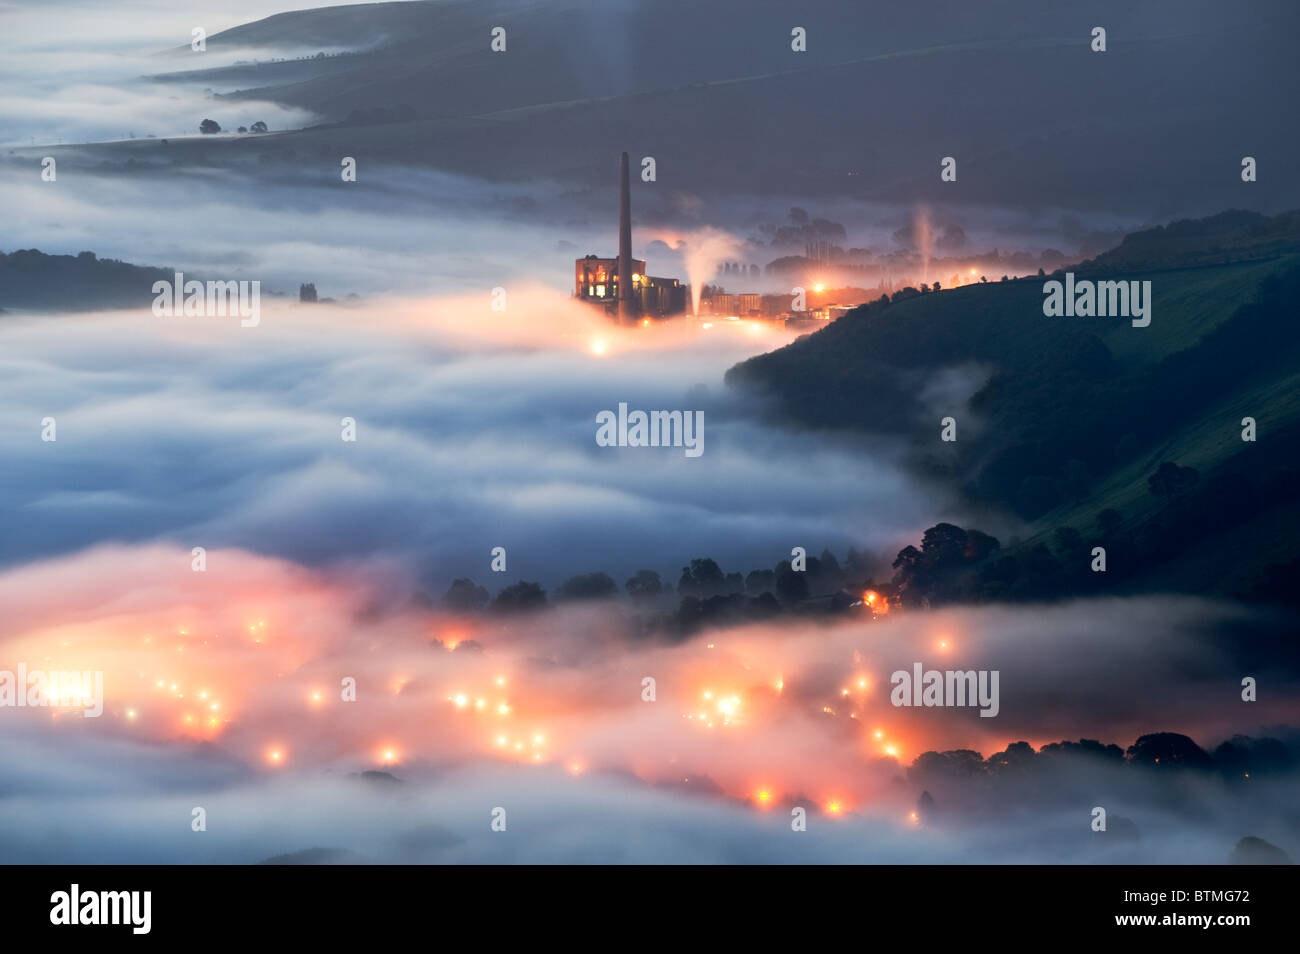 La cimenterie Lafarge & Lumières dans le brouillard, de Castleton Hope Valley, parc national de Peak District, Derbyshire, Angleterre, RU Banque D'Images